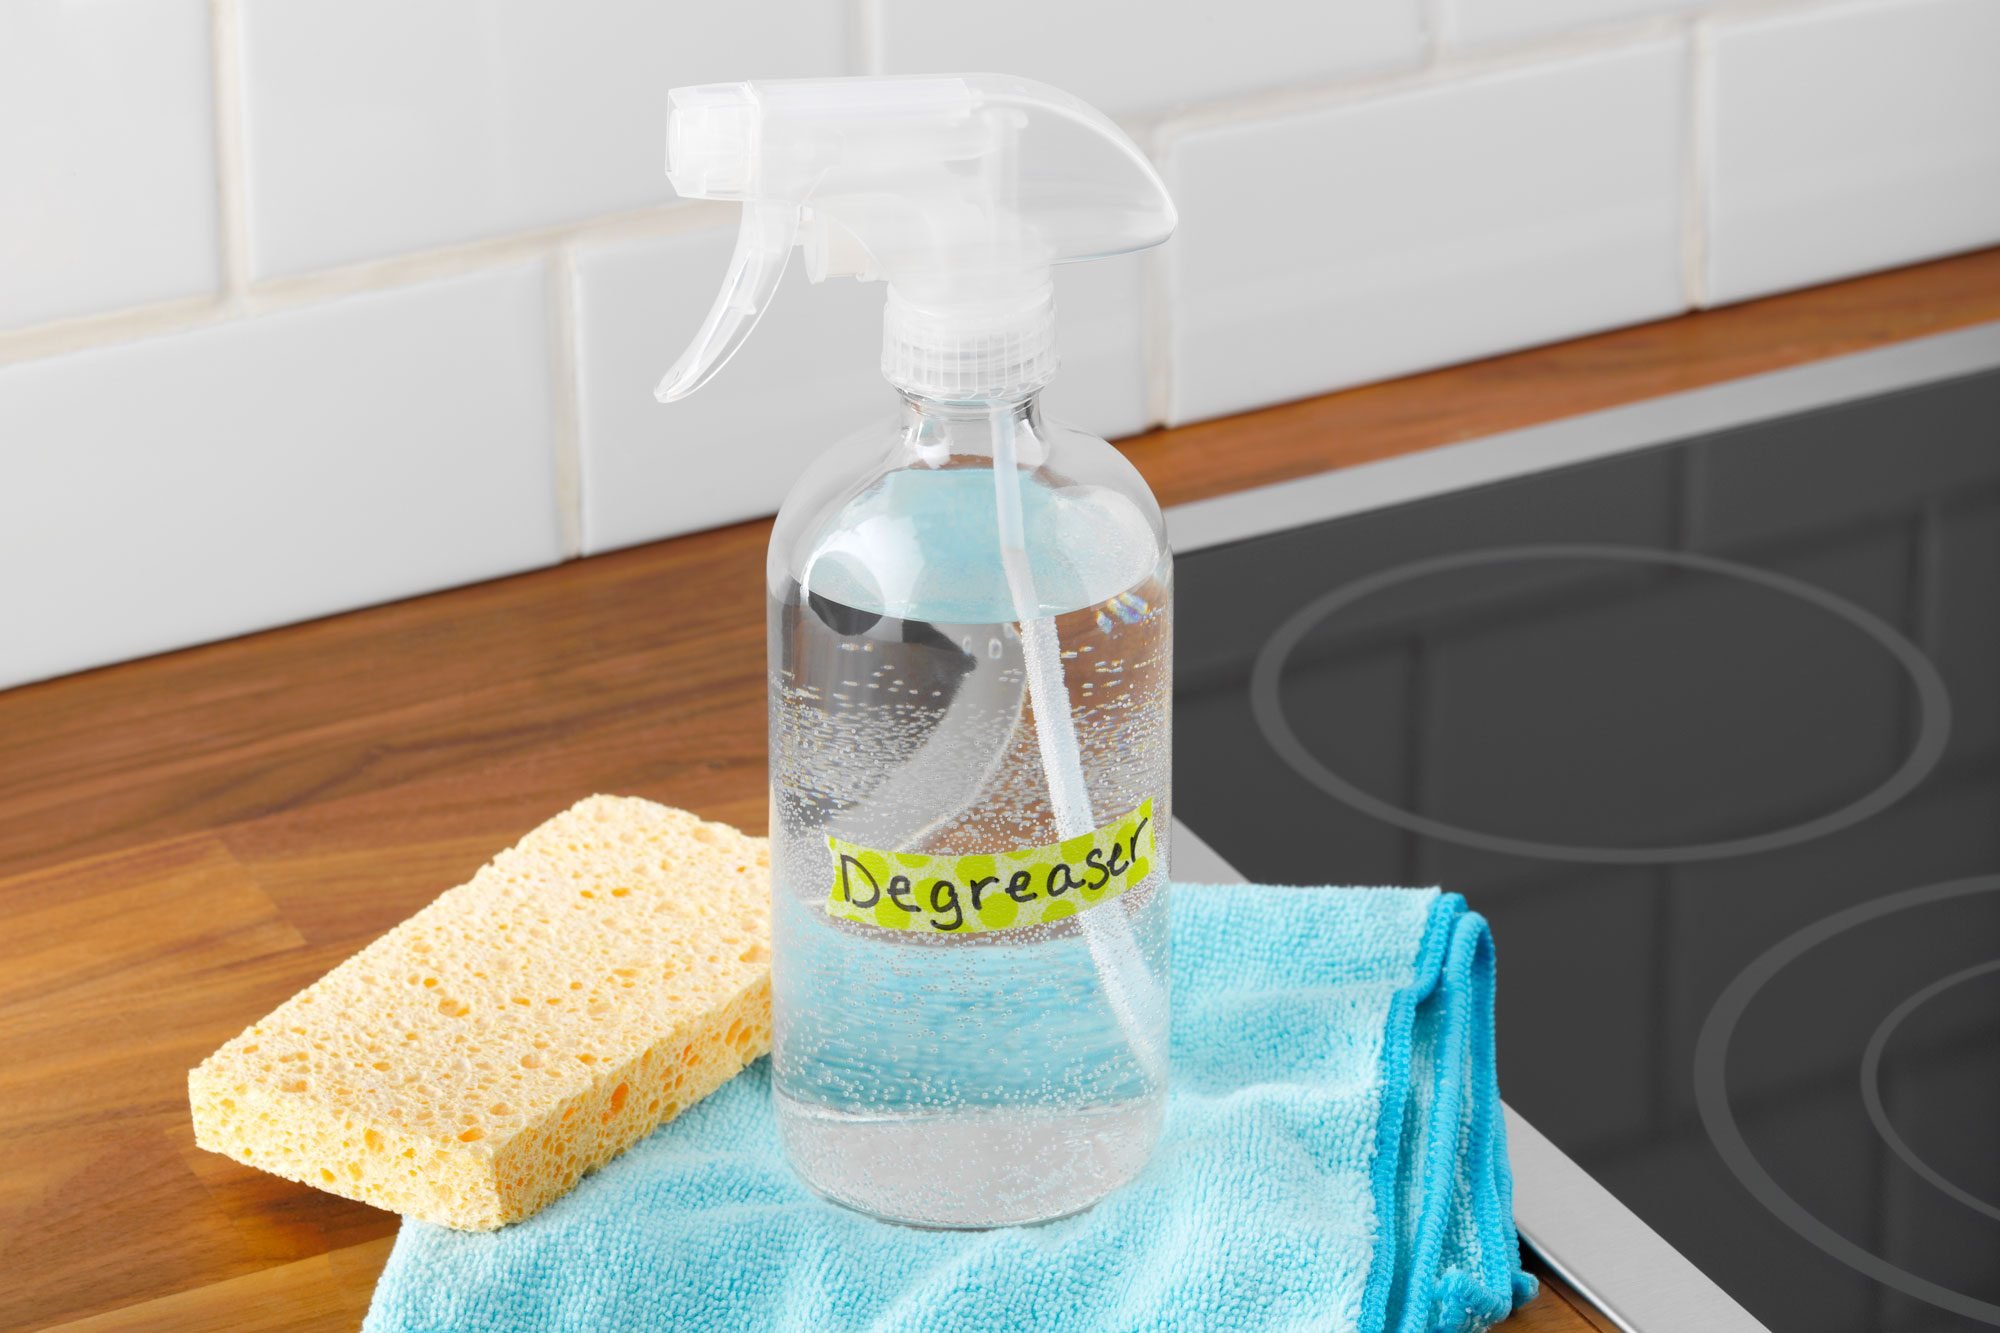 Homemade Cleaners Degreaser TOHSLPL23 PU6186 DR 04 05 7b FT Hero1 MLedit 